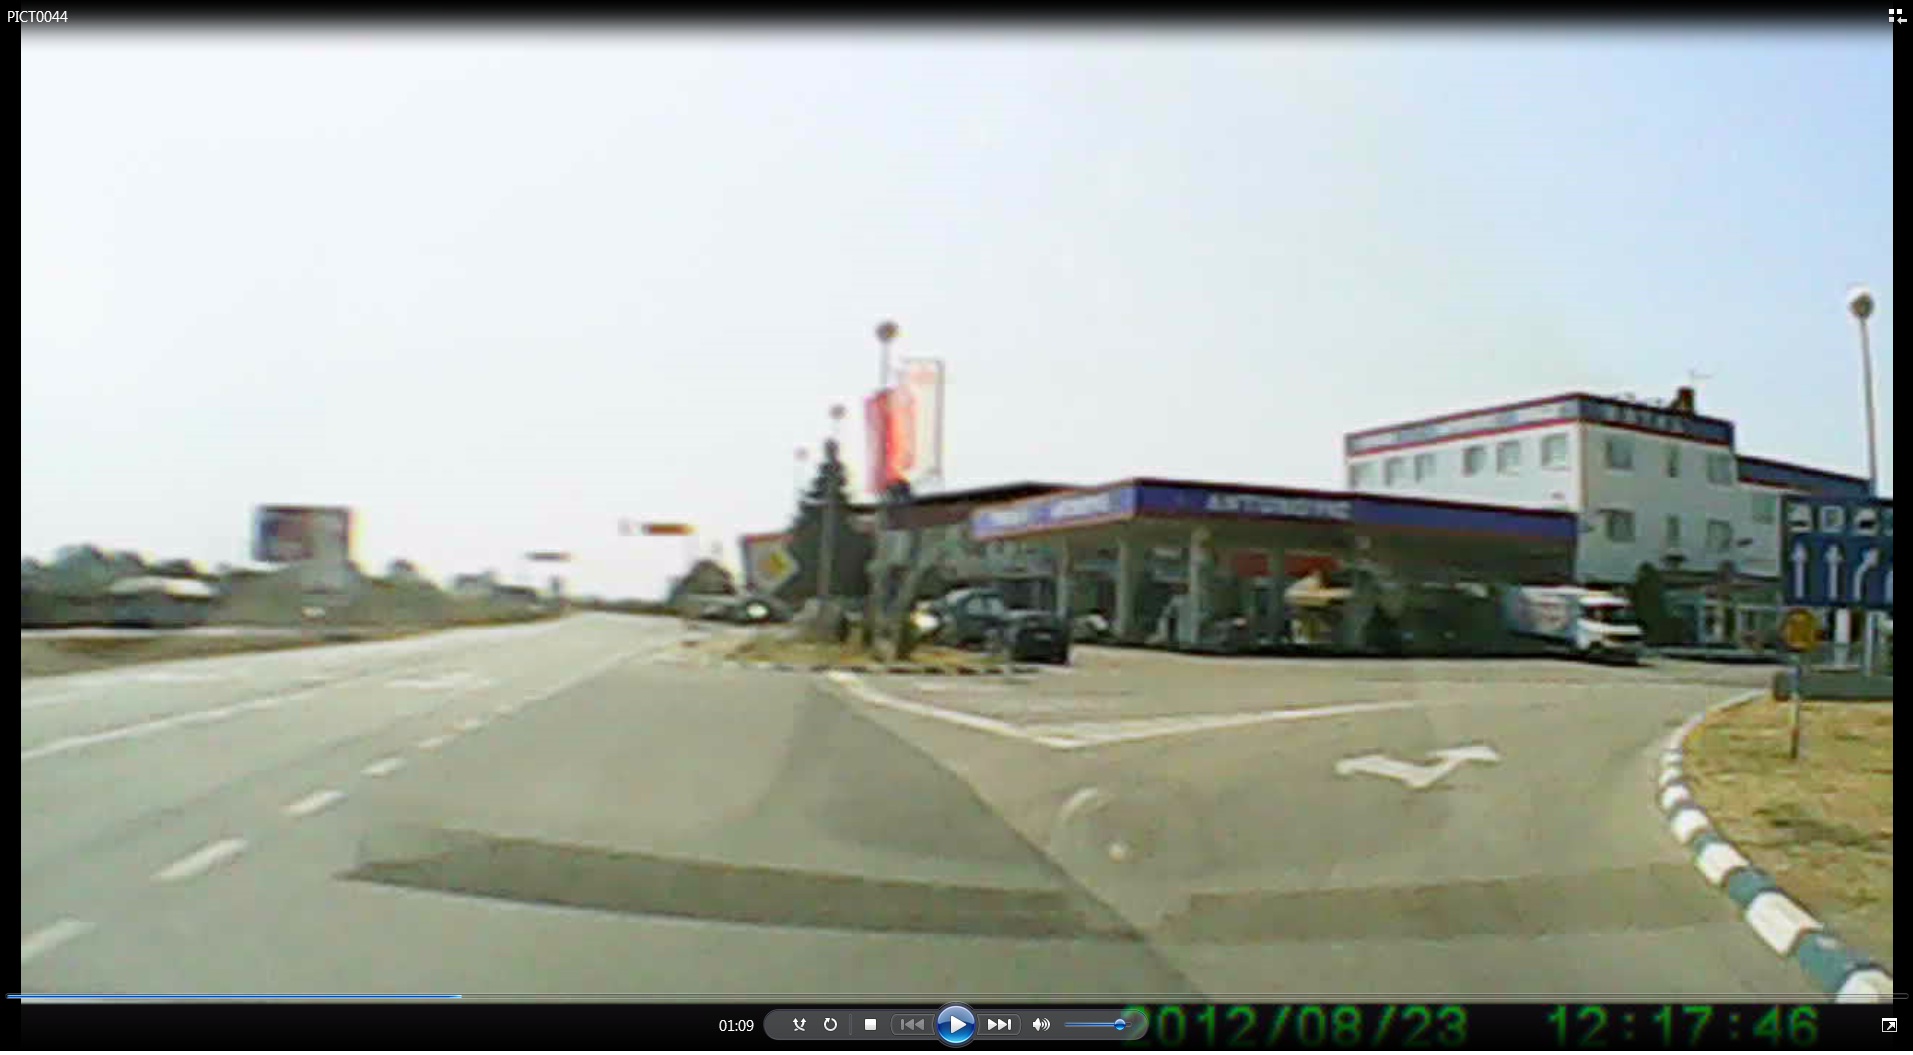 Orasje dojazd do stacji benzynowej.jpg